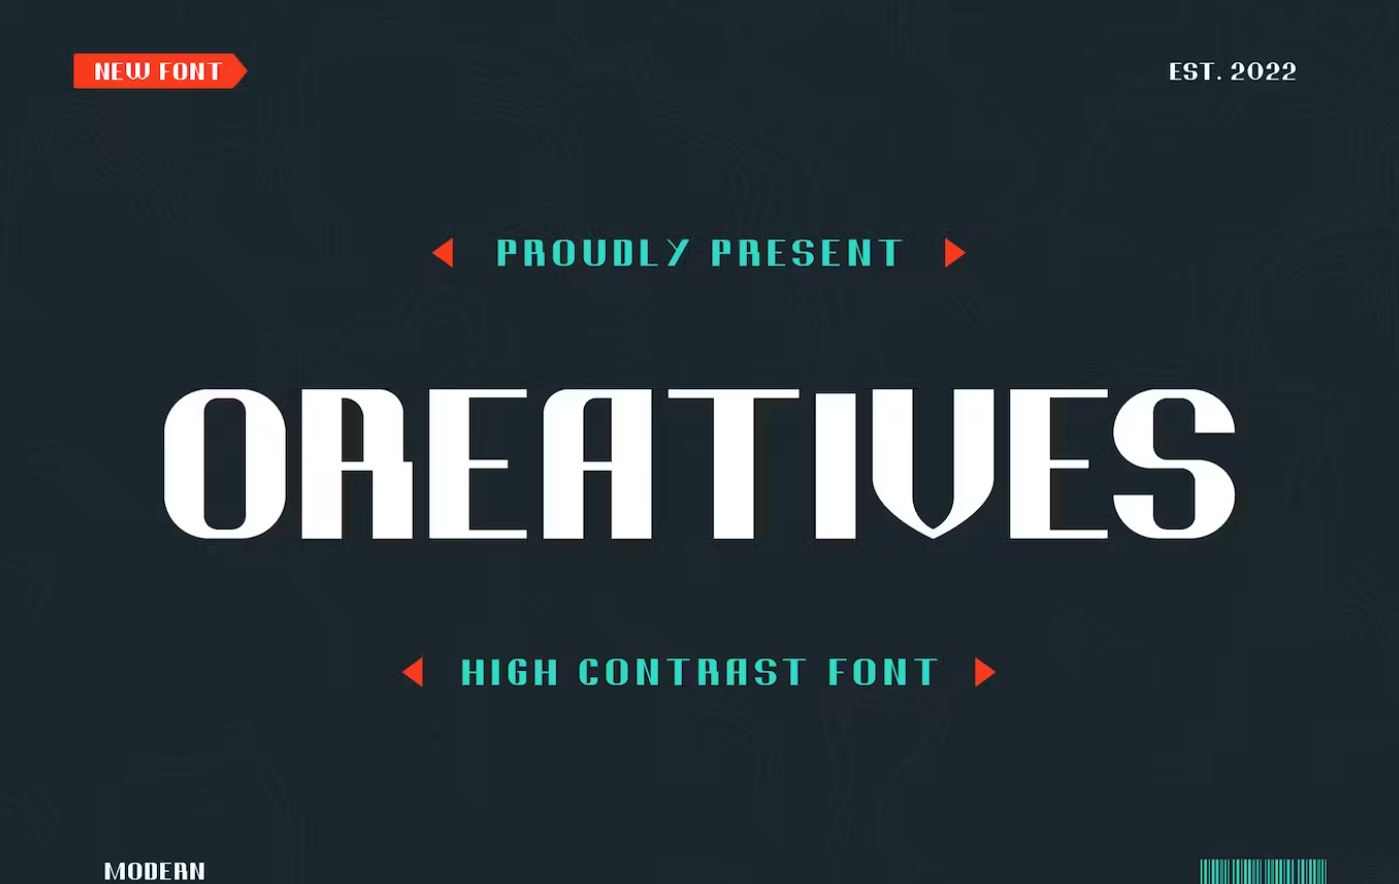 Elegant-High-Contrast-Font-Typefaces-Download